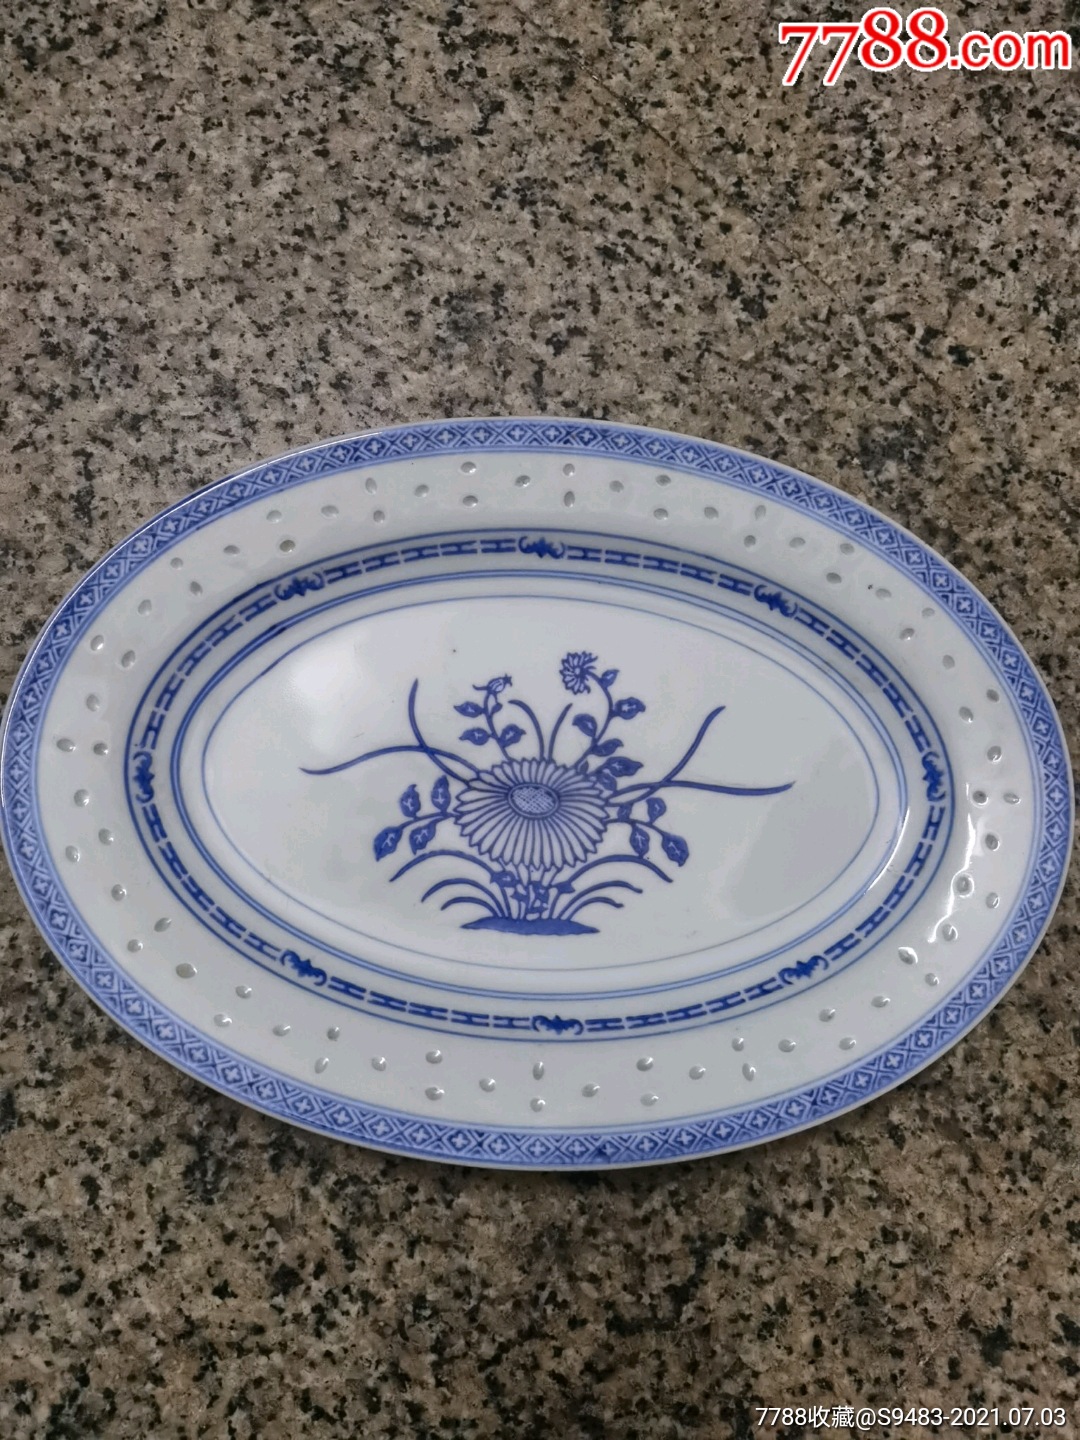 吉蝠蓝花盘一件五六十年代景德镇外销瓷